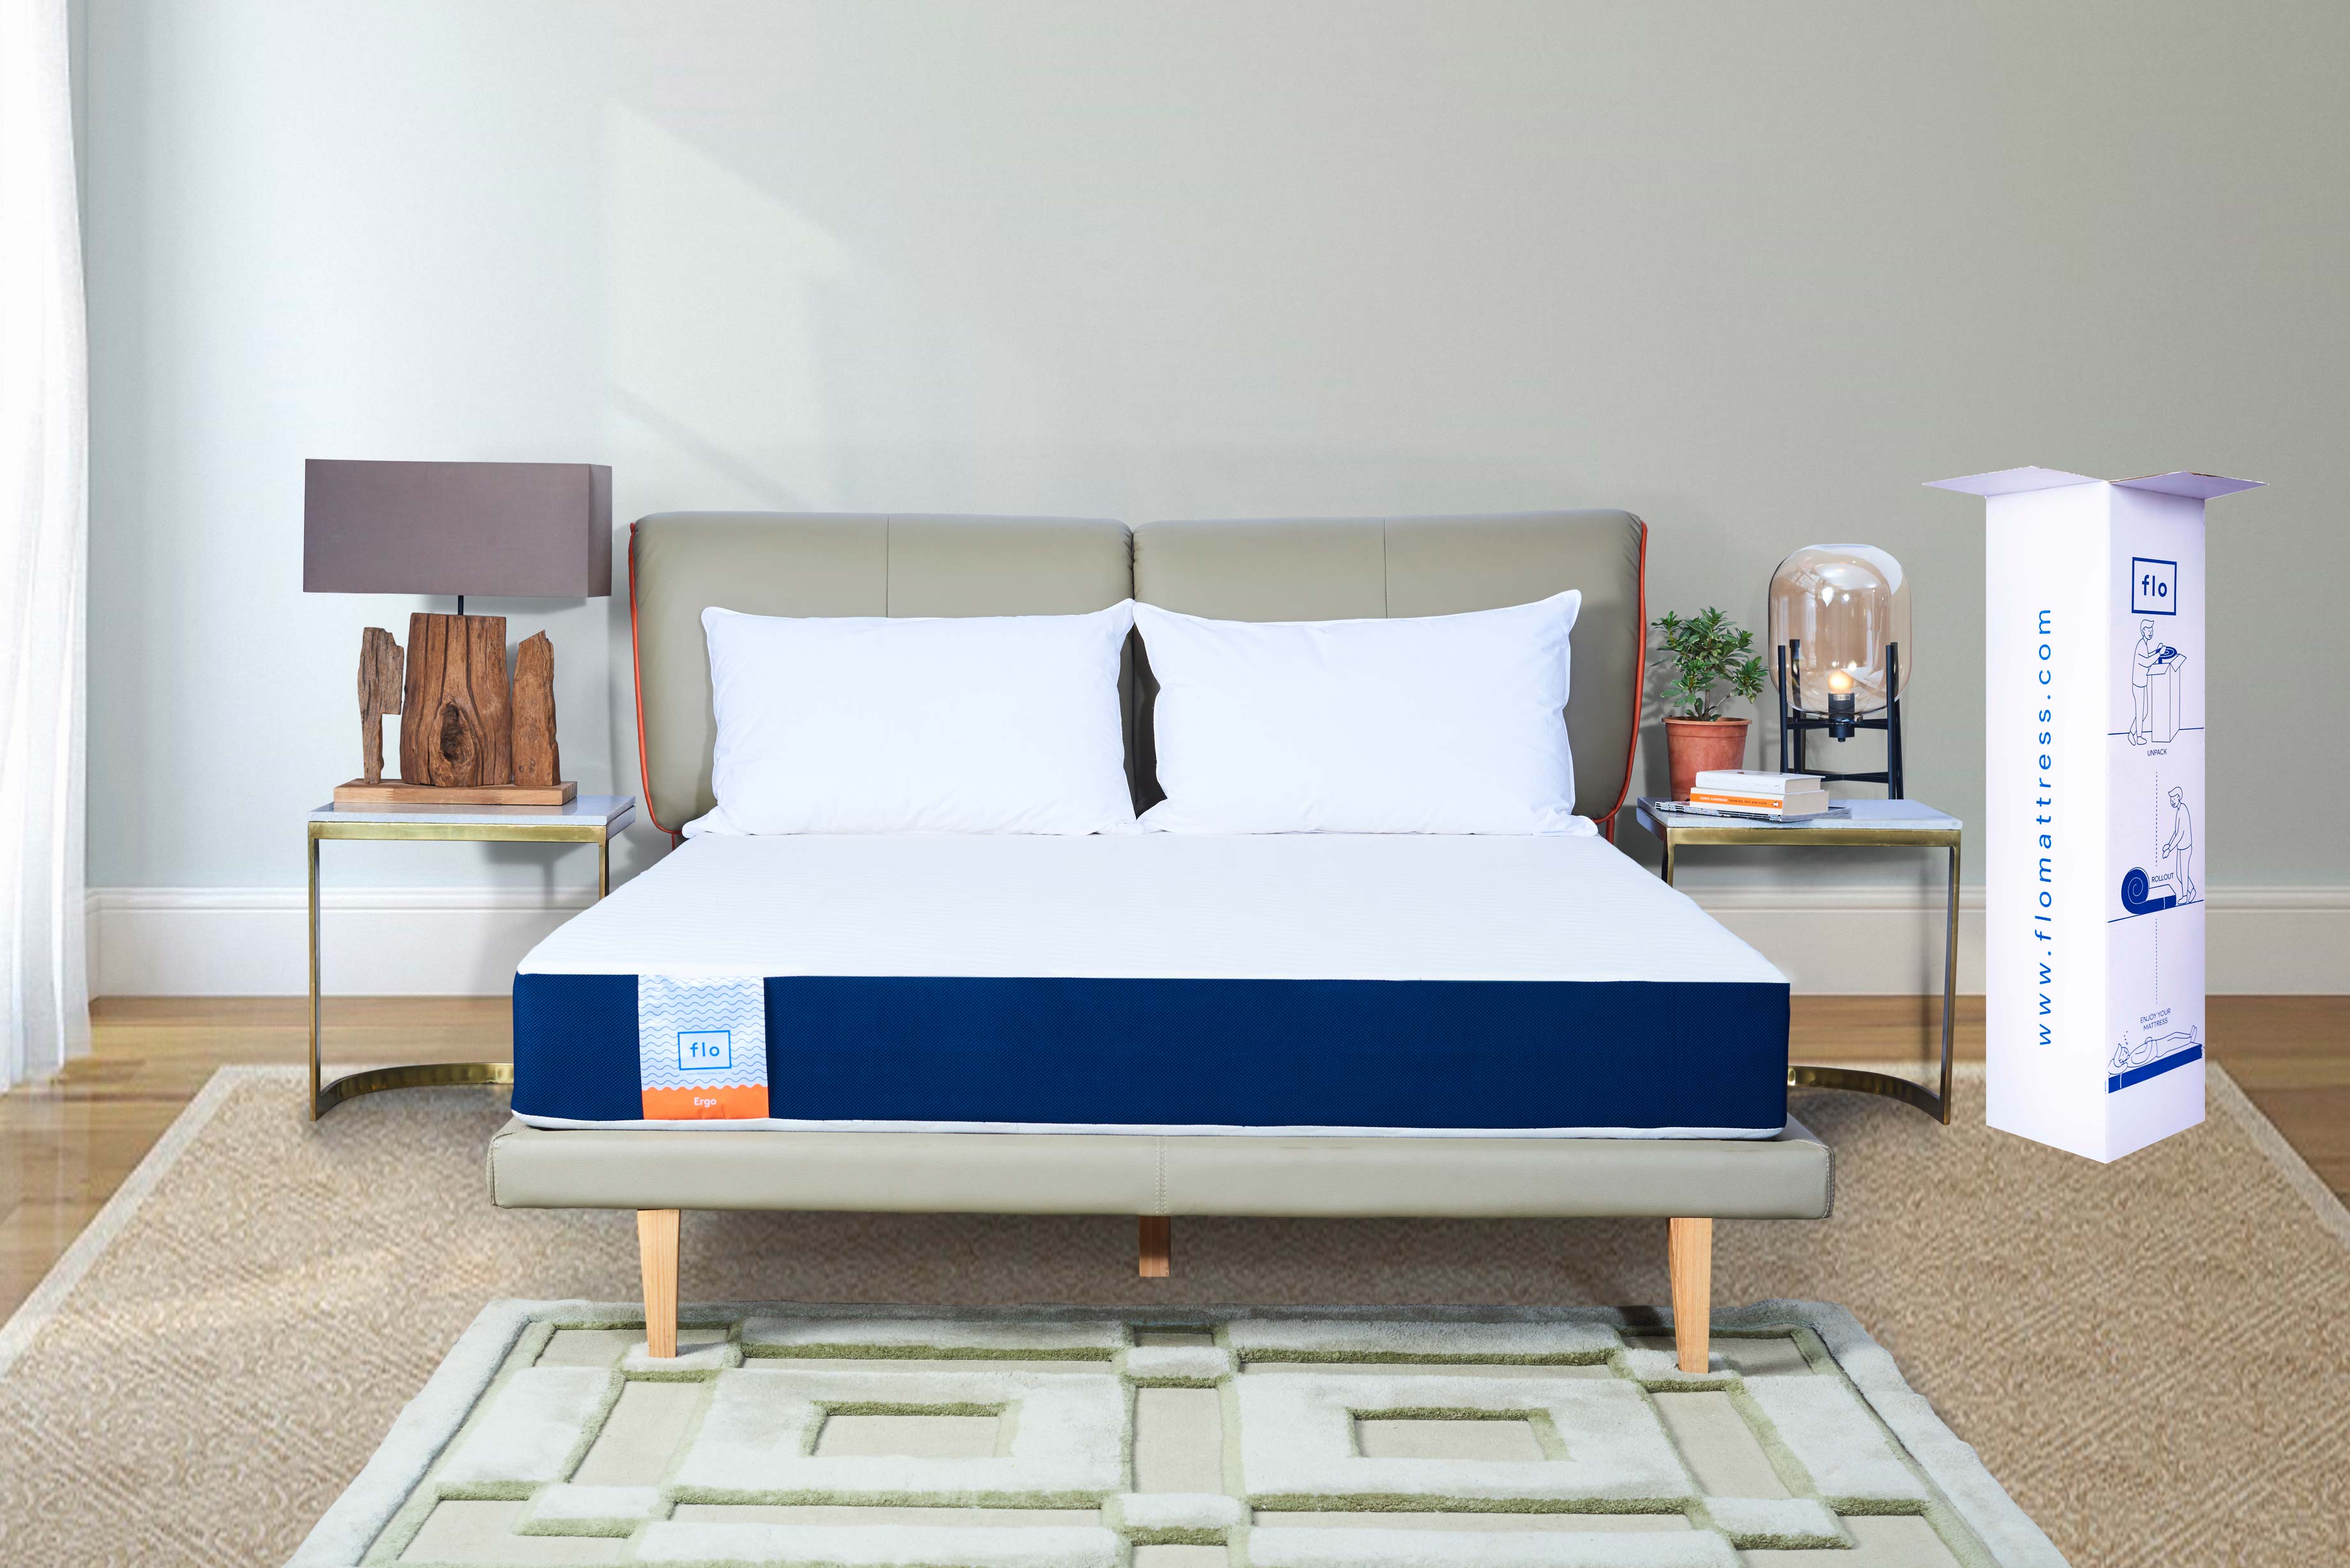 flo mattress review quora